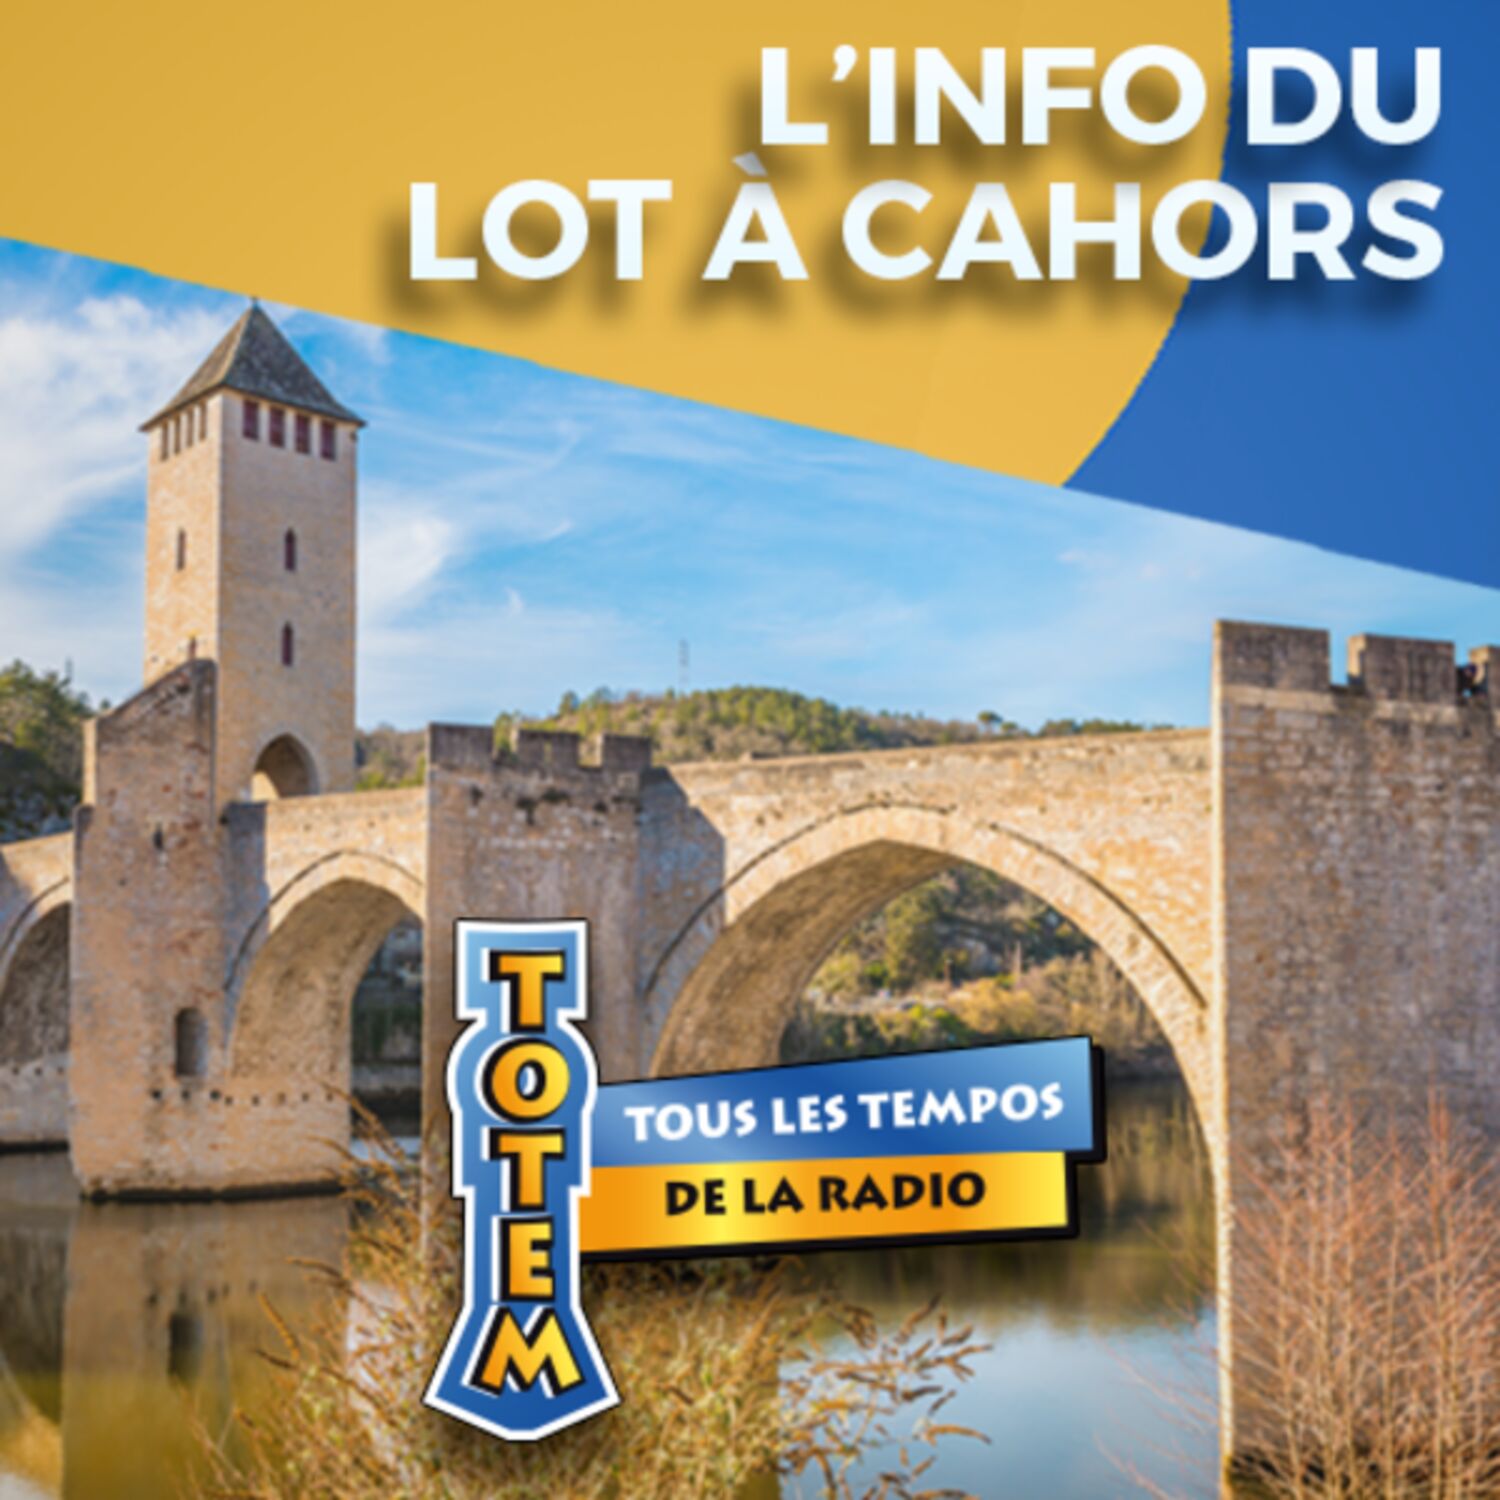 L'info du Lot à Cahors du 10/05/23 à 18h00